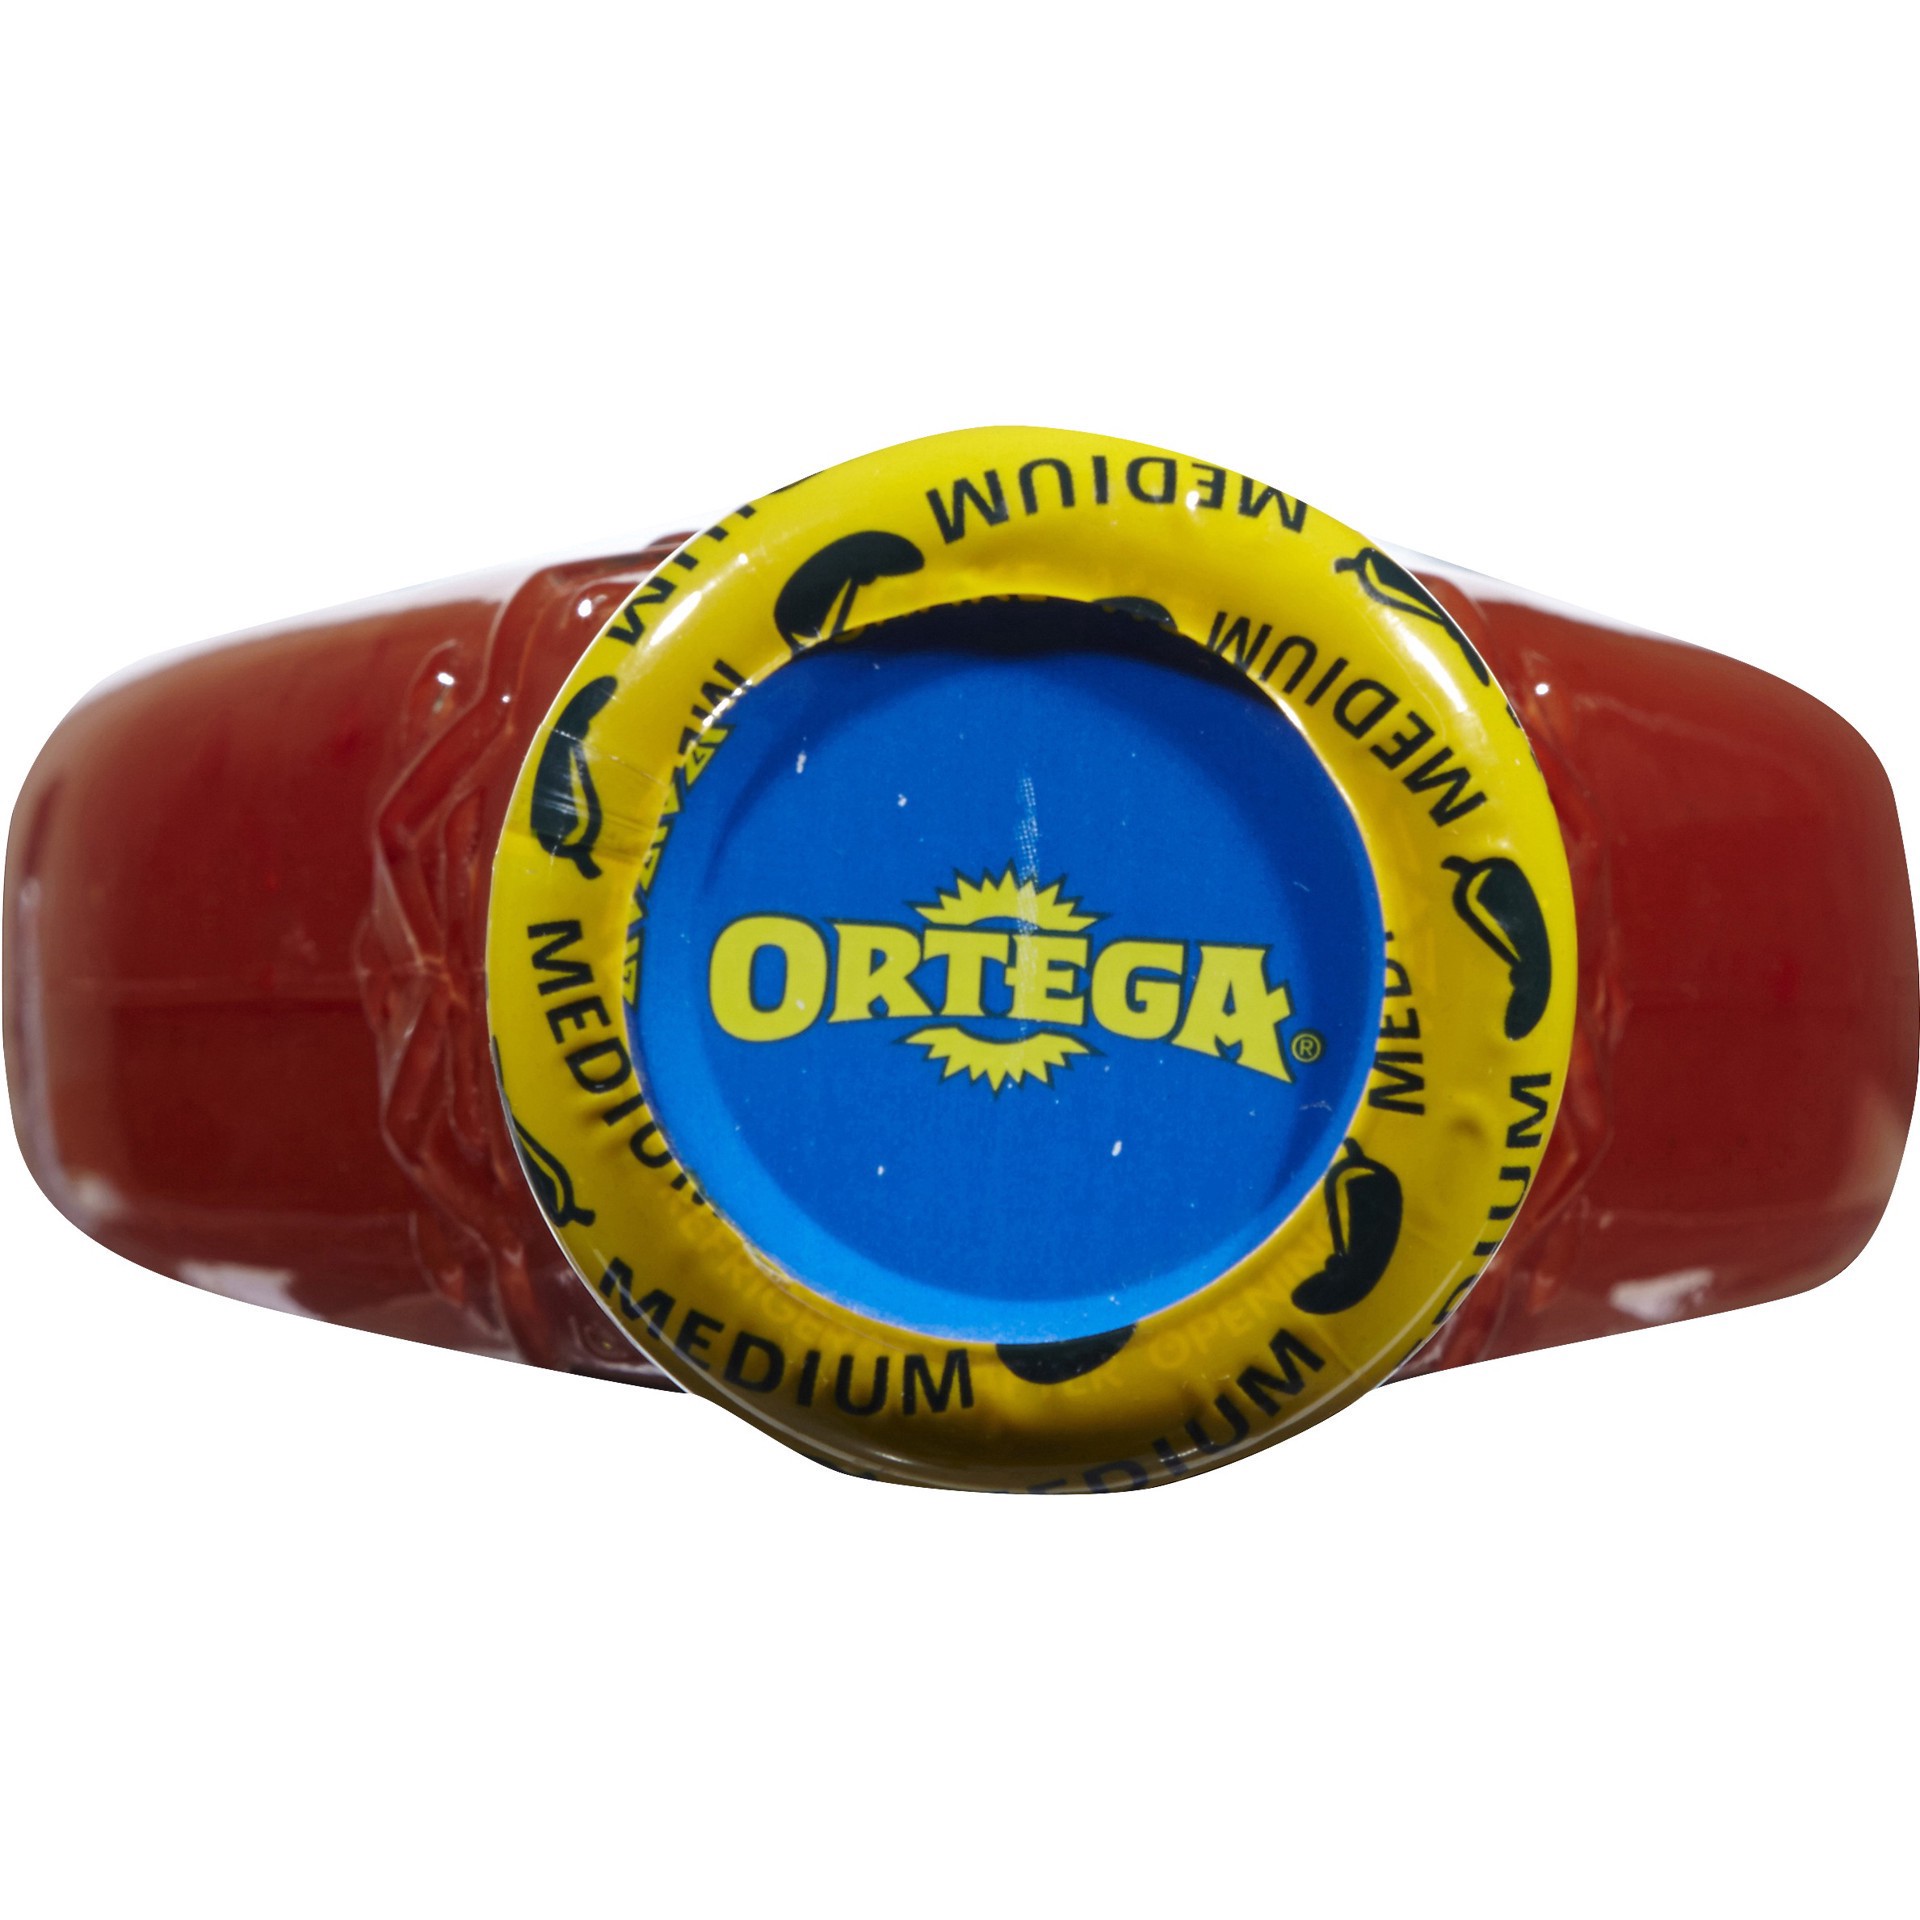 slide 9 of 9, Ortega Medium Thick & Smooth Original Taco Sauce 16 oz, 16 oz